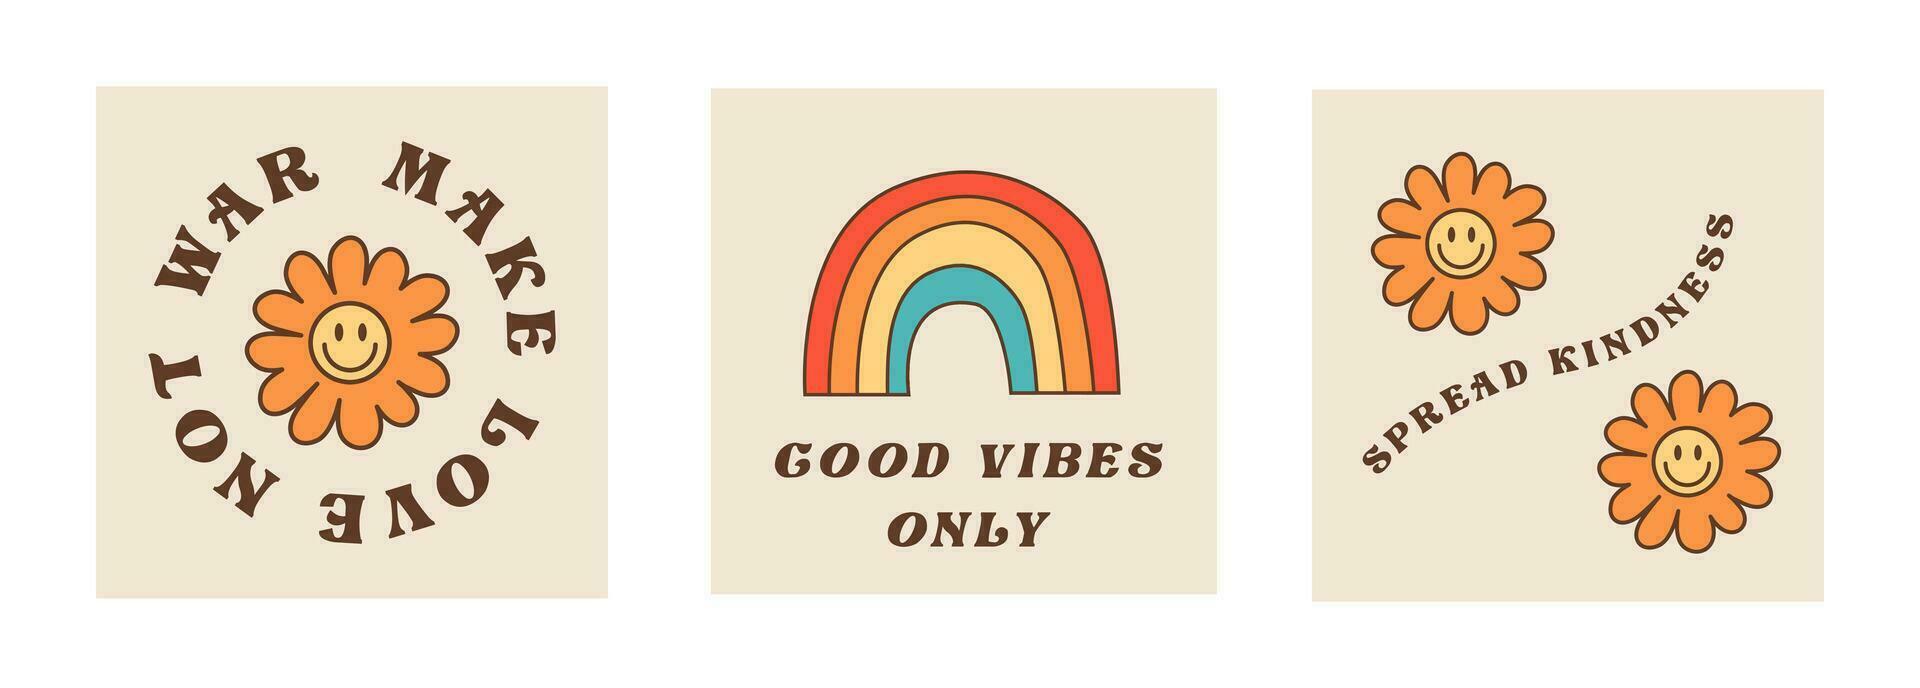 conjunto do quadrado cartões com motivacional e inspirado citações dentro anos 60 Anos 70 anos 80 estilo. hippie cultura frases com arco-íris. margarida flores com hippie texto. vetor plano ilustração.